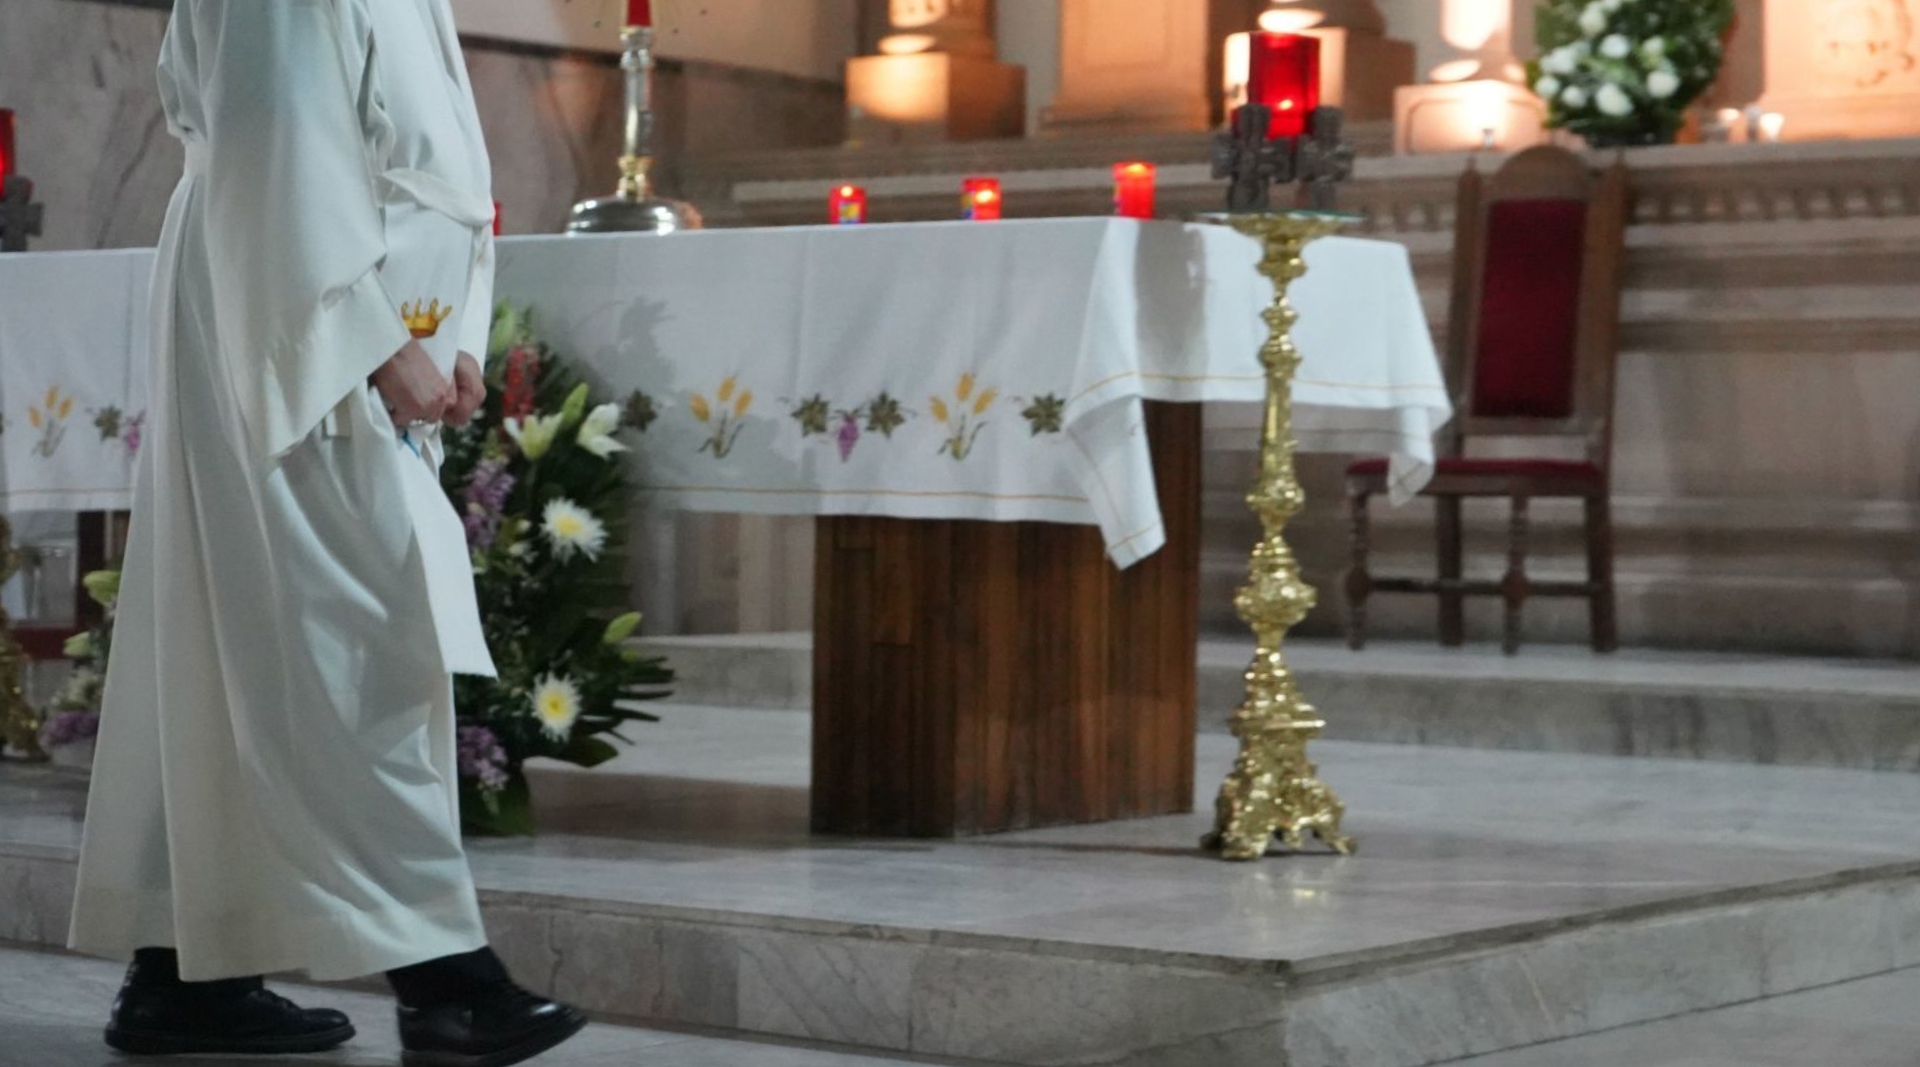 Los “ritos de sanación” que ofrecía un falso sacerdote en Cúcuta